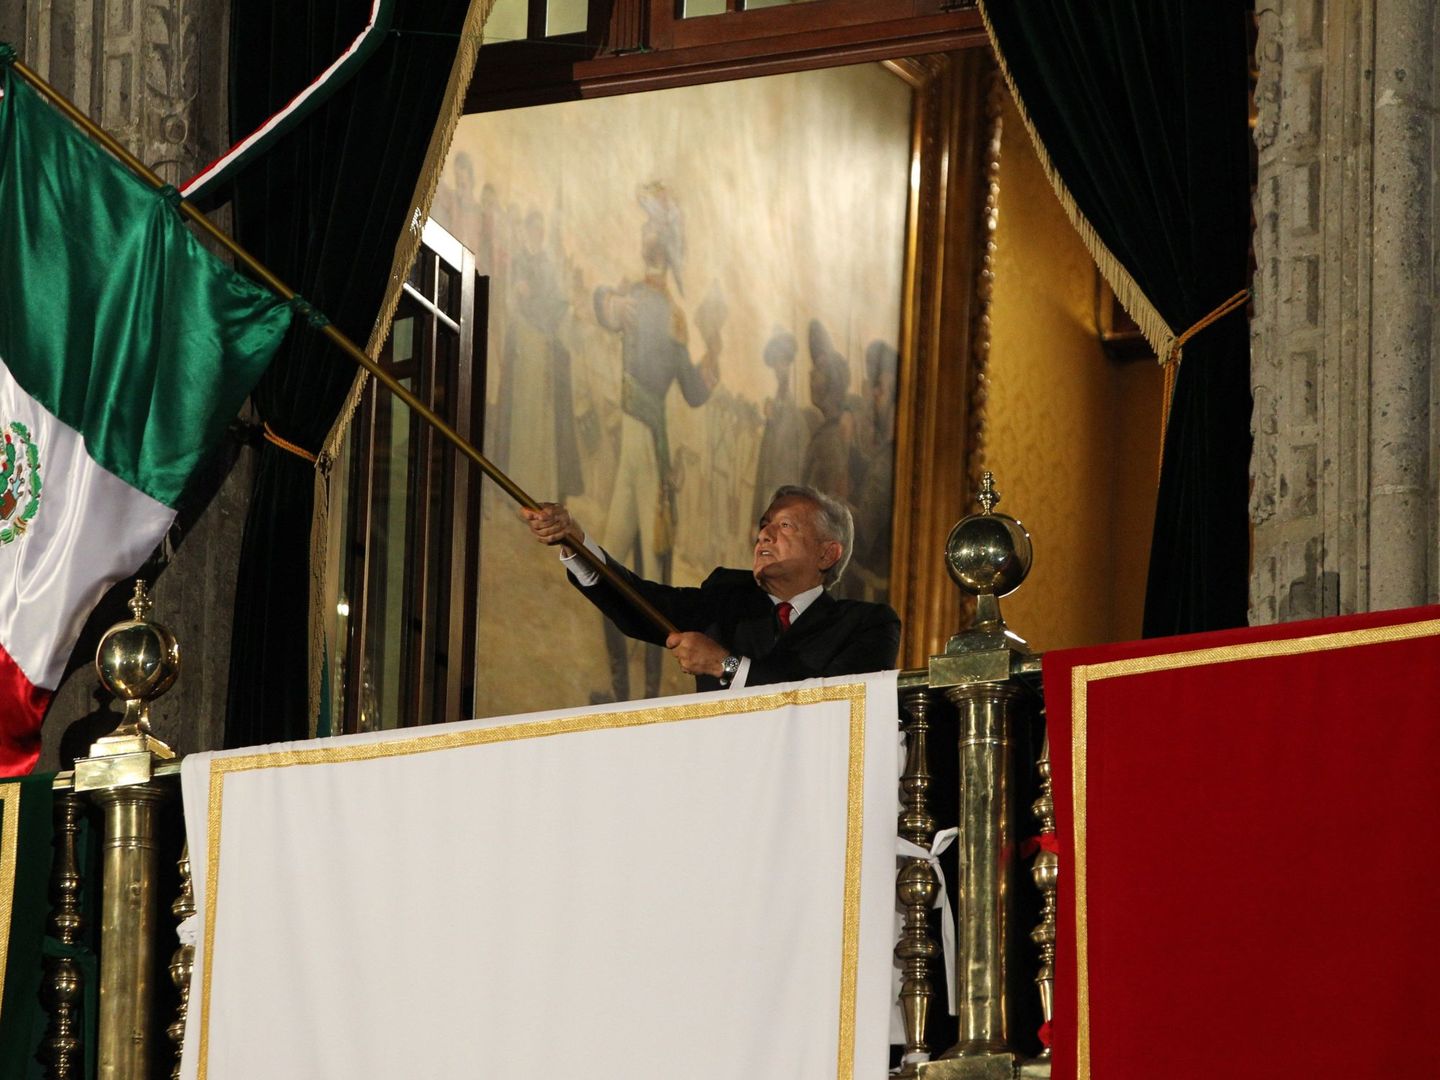 El presidente de México ondea la bandera nacional durante la conmemoración del aniversario número 209 del Grito de Independencia. (EFE)